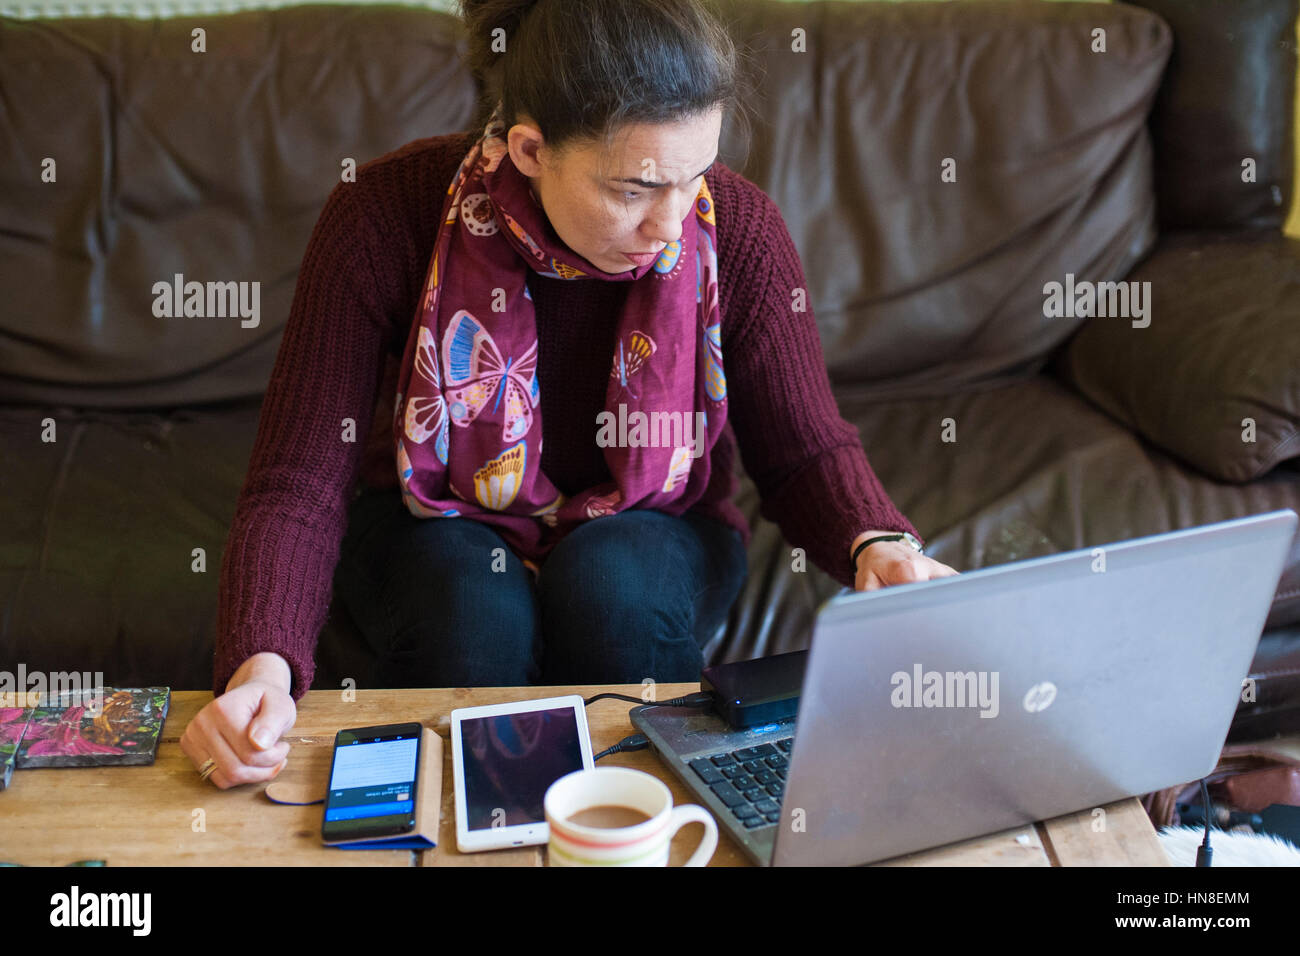 Travailler à domicile au Royaume-Uni Coronavirus verrouille l'auto-isolation. Femme dans sa trentaine travaillant à la maison avec un ordinateur portable, téléphone mobile et tablette sur table basse Banque D'Images